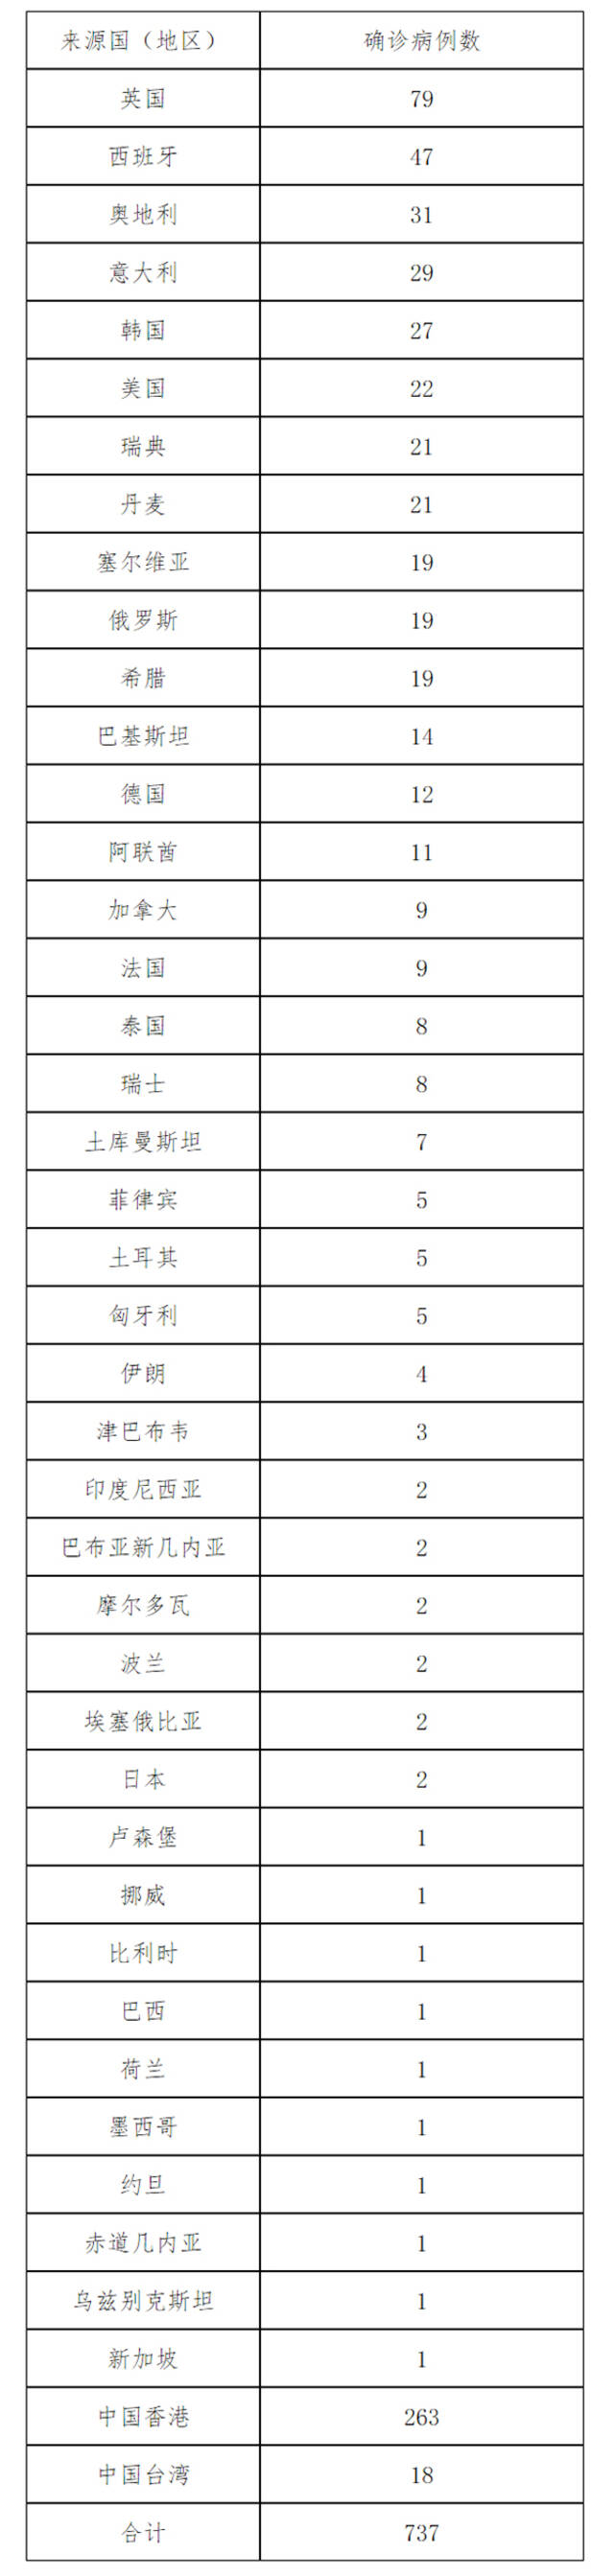 北京6月20日新增3例本土确诊病例、2例本土无症状感染者和1例境外输入确诊病例 治愈出院9例